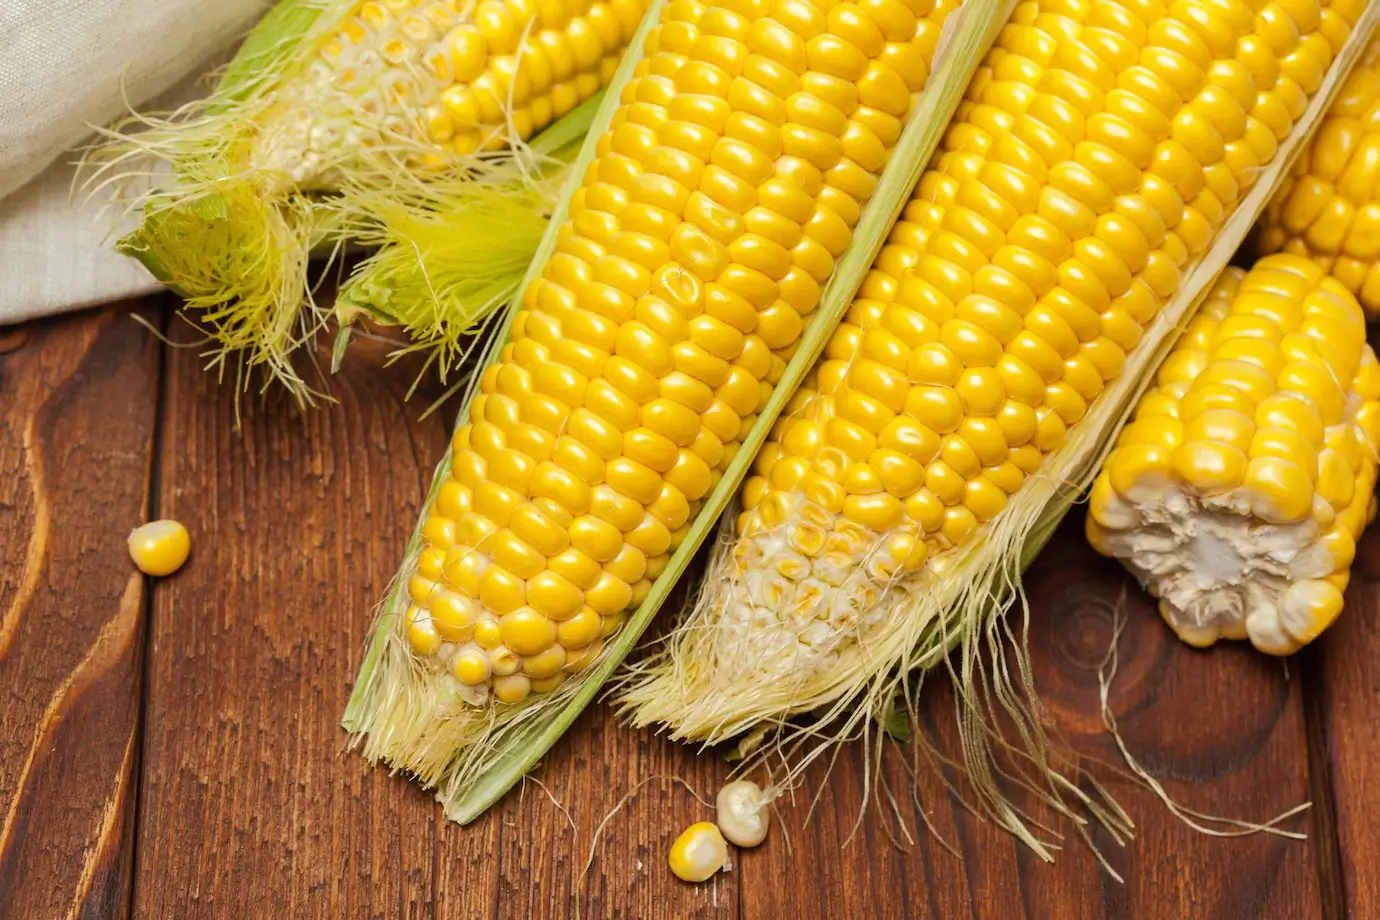 Best Corn Jokes - Jokes About Corn